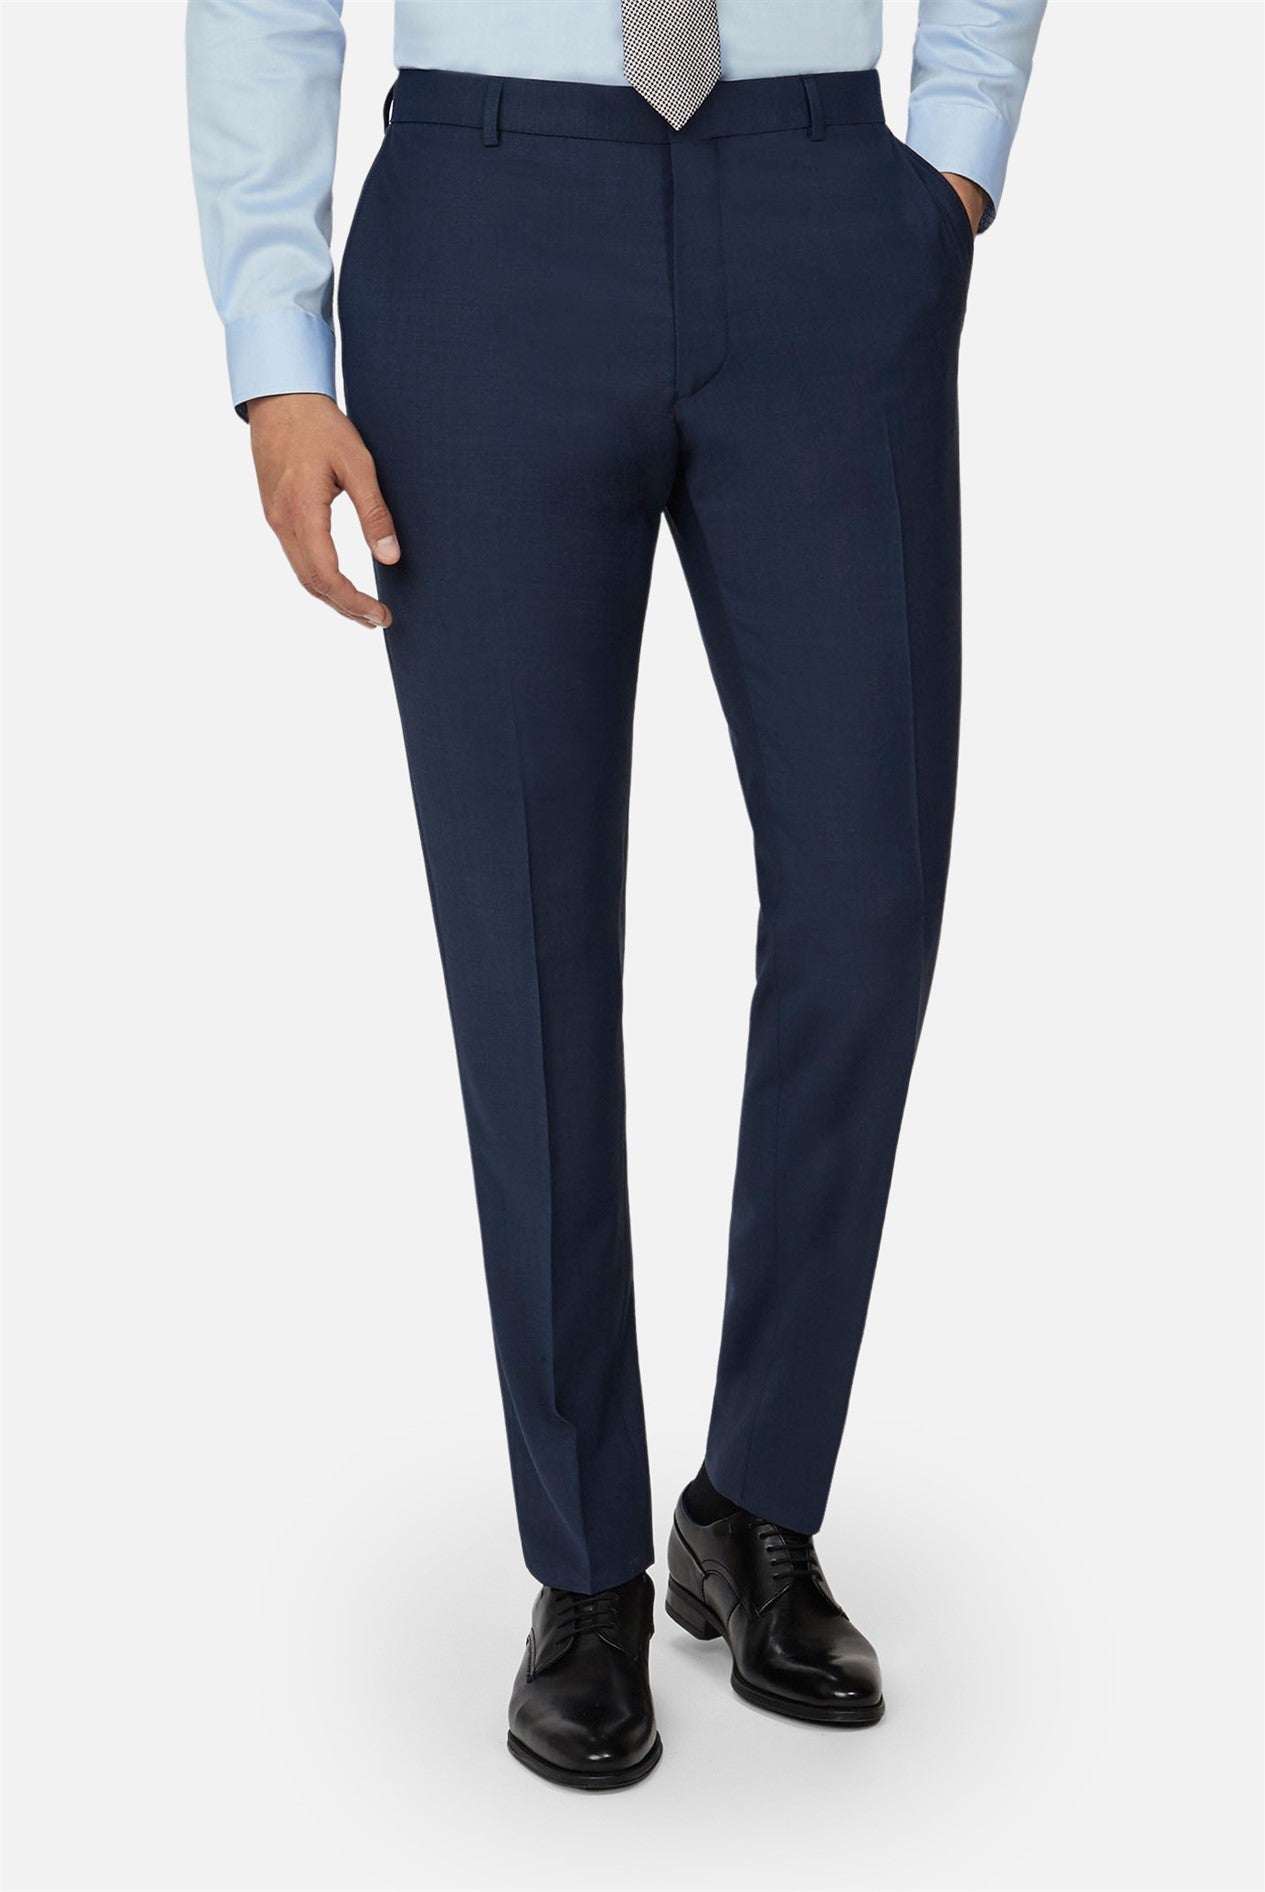 Ted Baker Slim Fit Panama Blue Suit Trouser